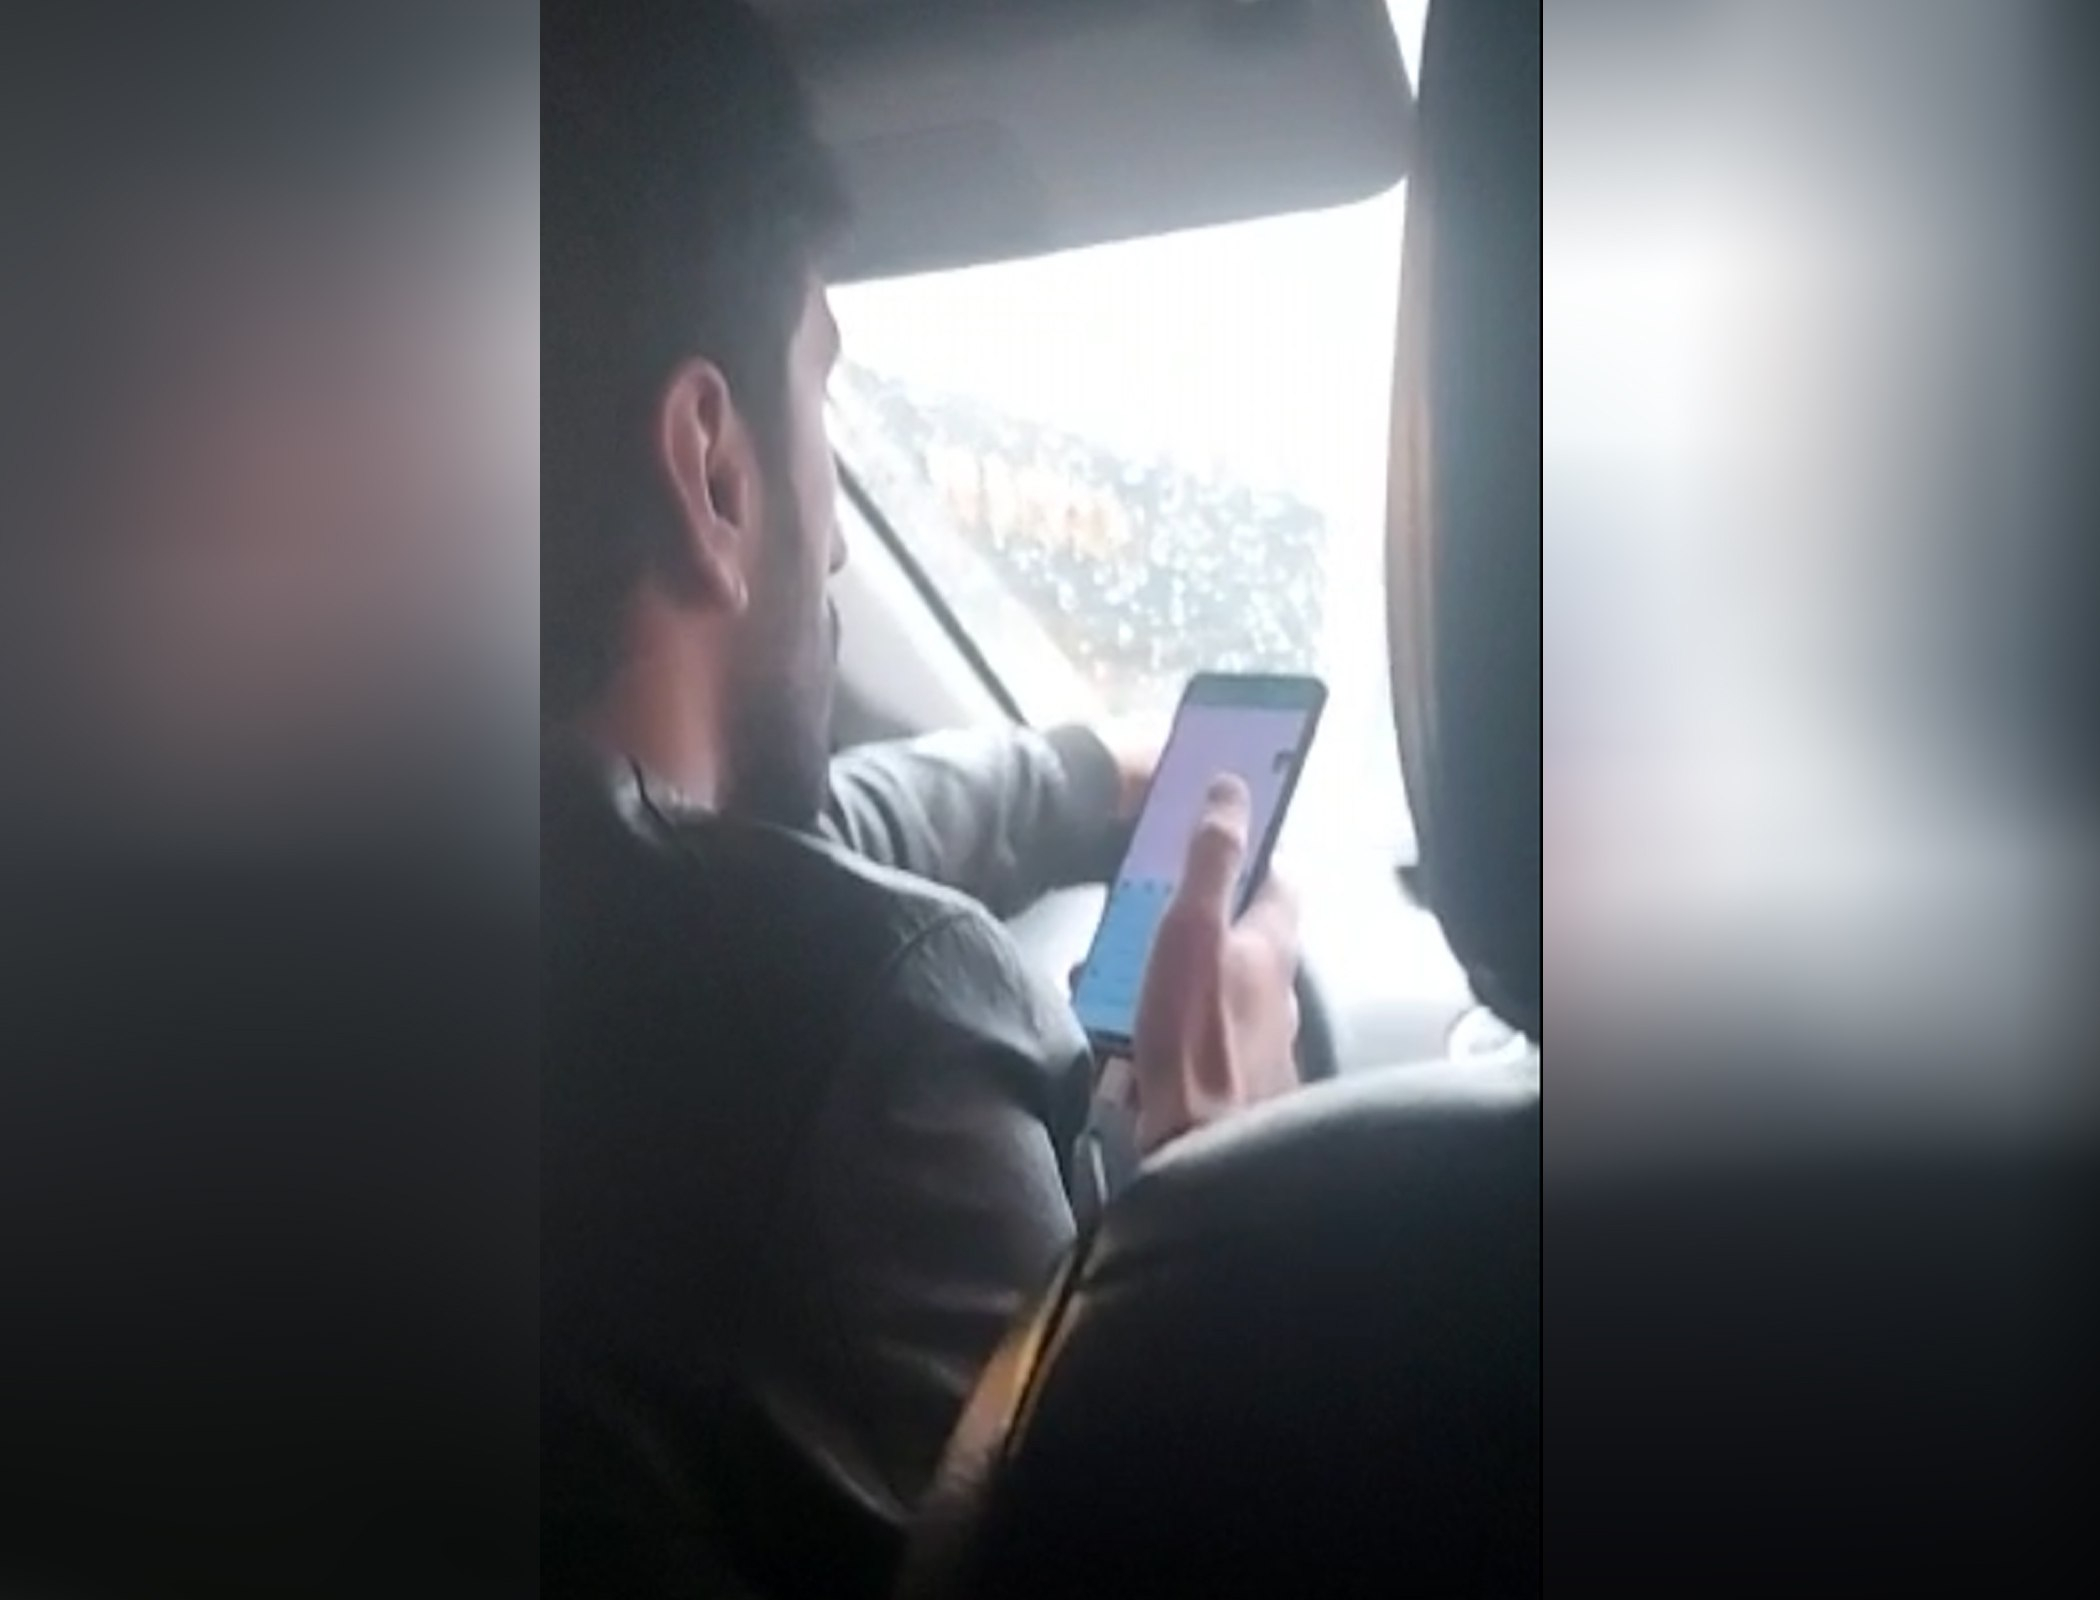 Bakıda daha bir taksi sürücüsü ilə qadın sərnişin arasında mübahisə - FOTO/VİDEO